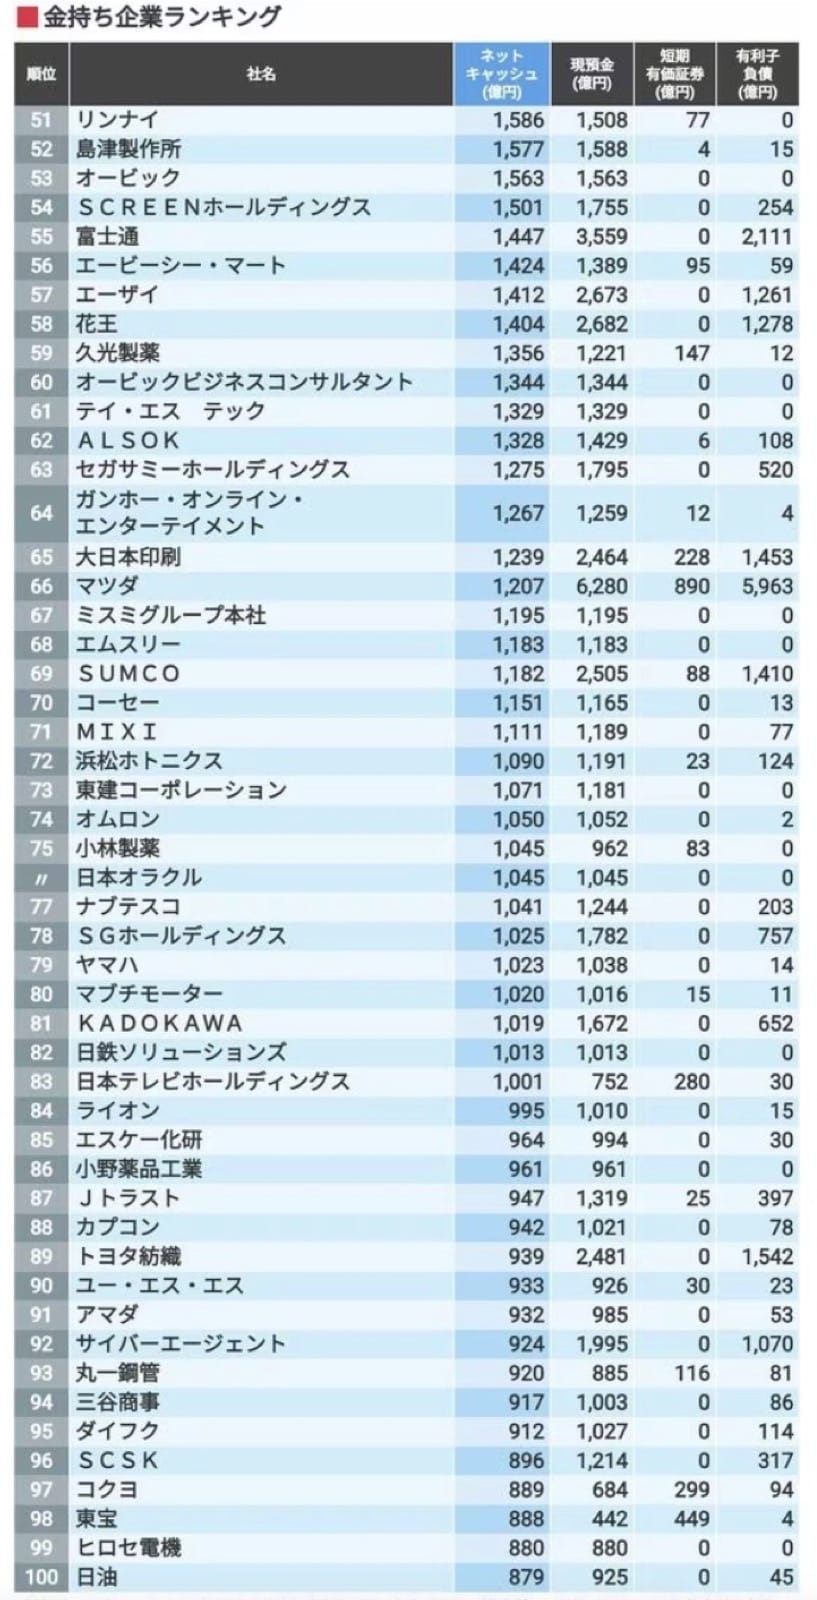 任天堂成日本最富公司 现金流约114亿美元